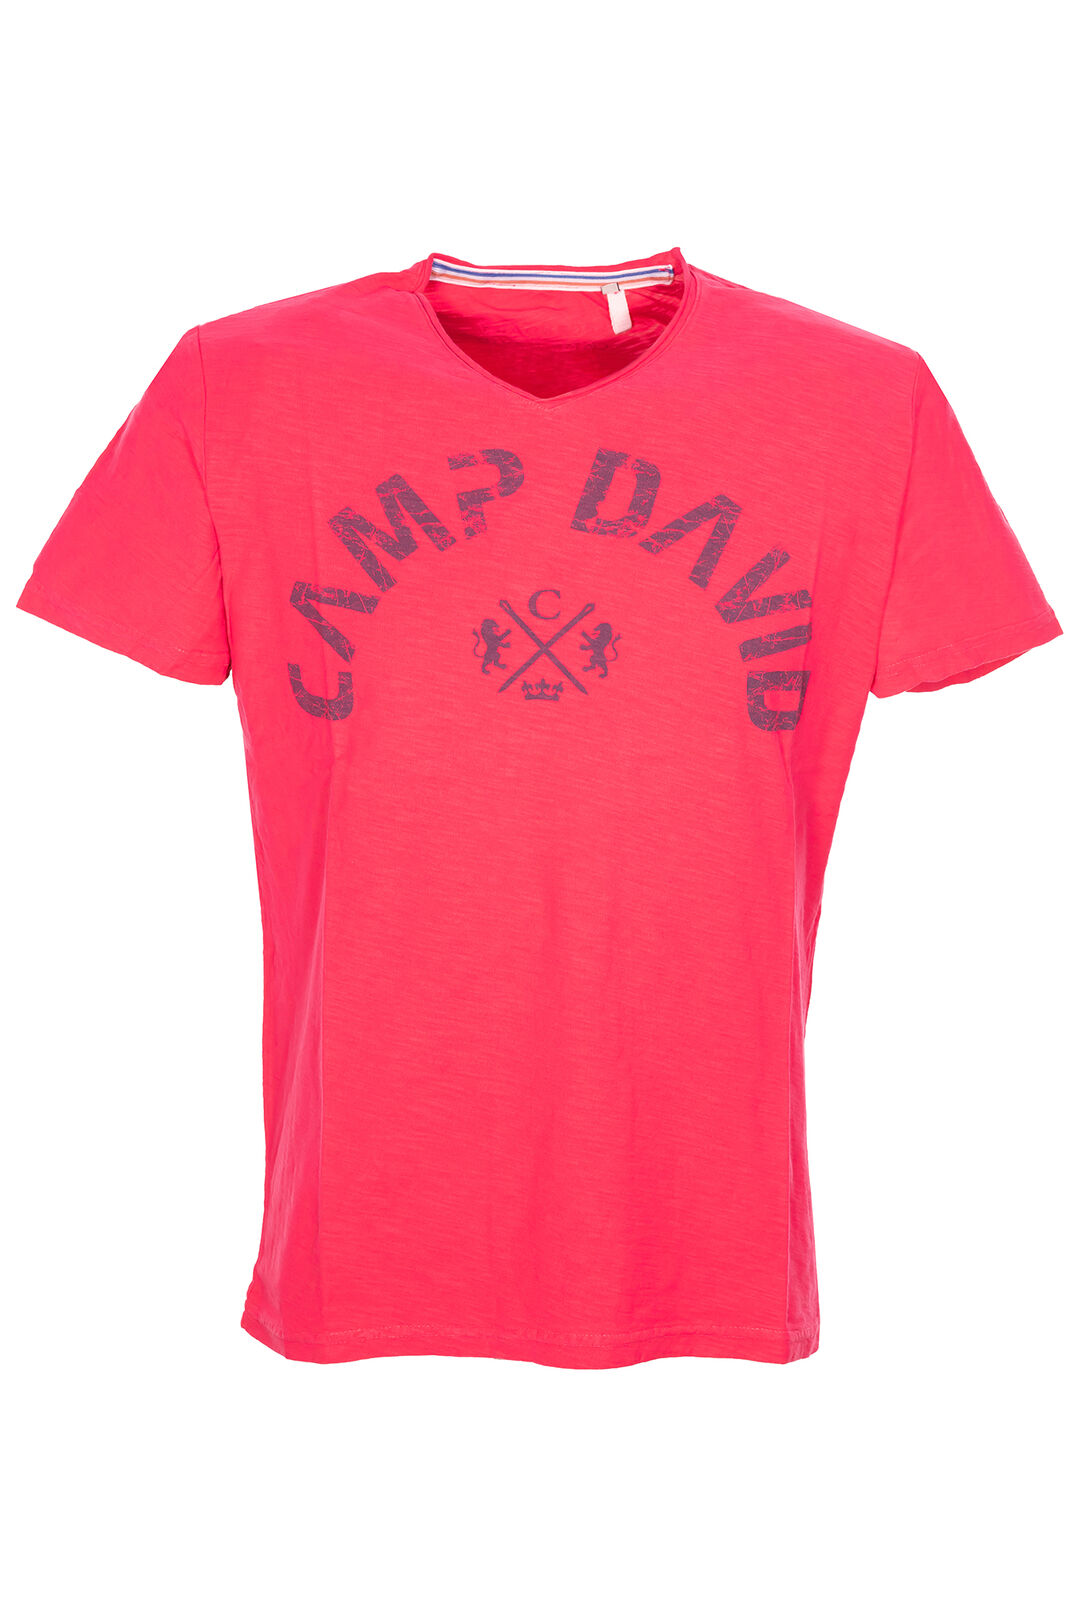 Camp David T Shirt Kurzarm Herren Baumwolle V Ausschnitt Logo 